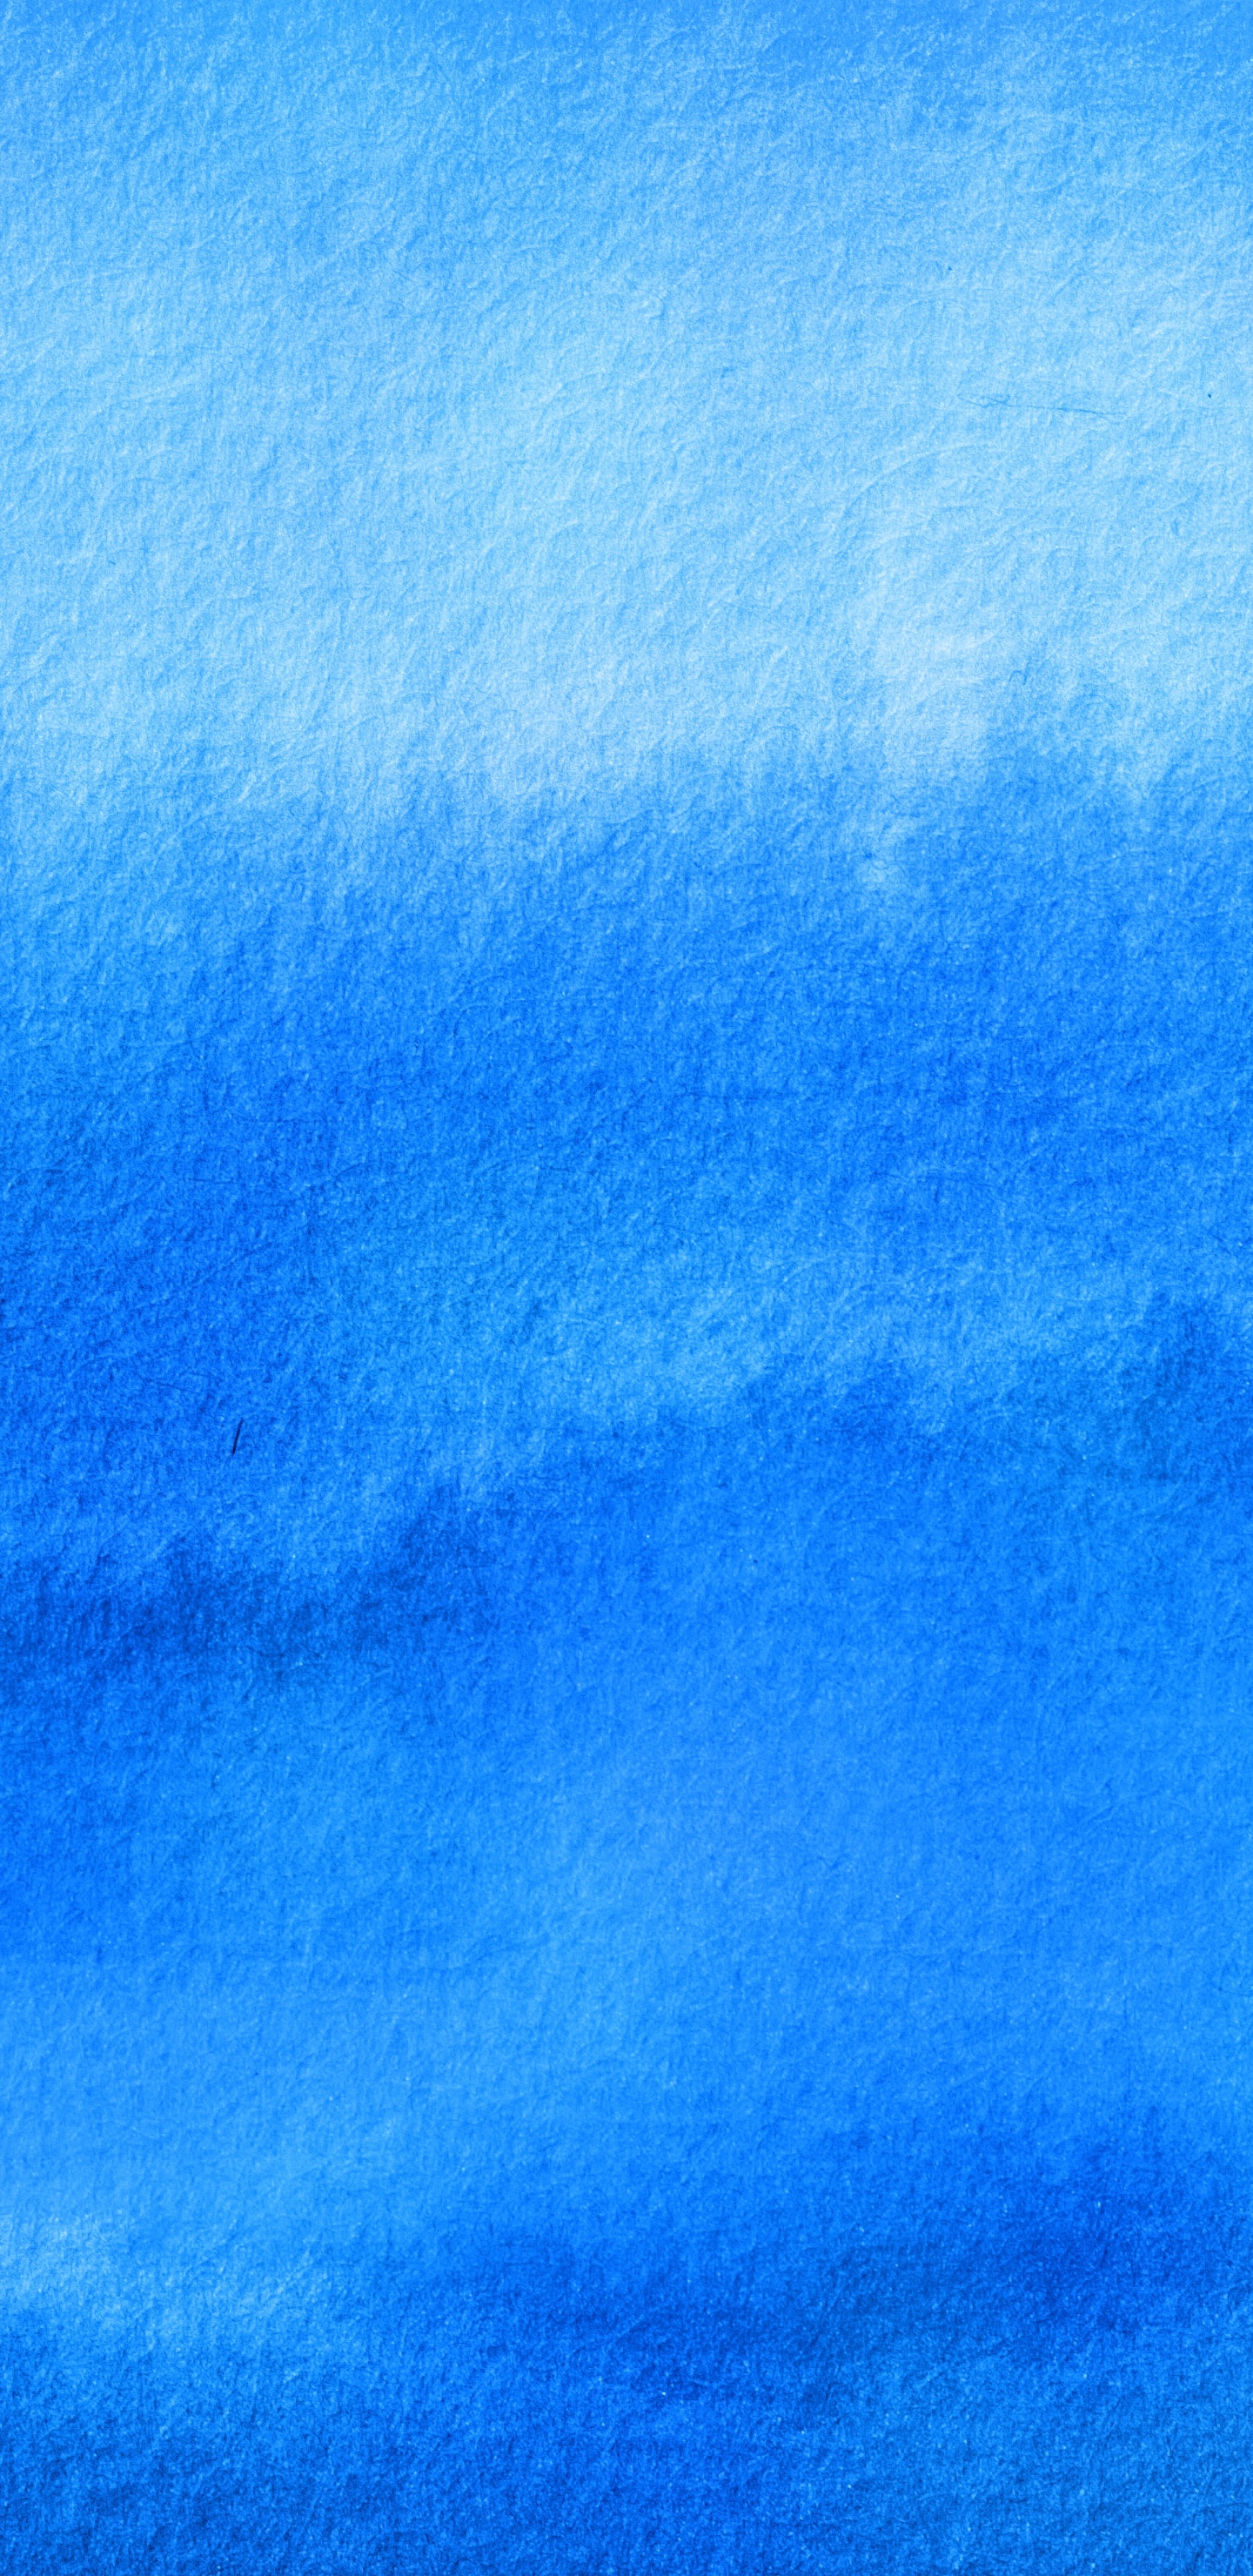 Nuages Bleus et Blancs Pendant la Journée. Wallpaper in 1440x2960 Resolution